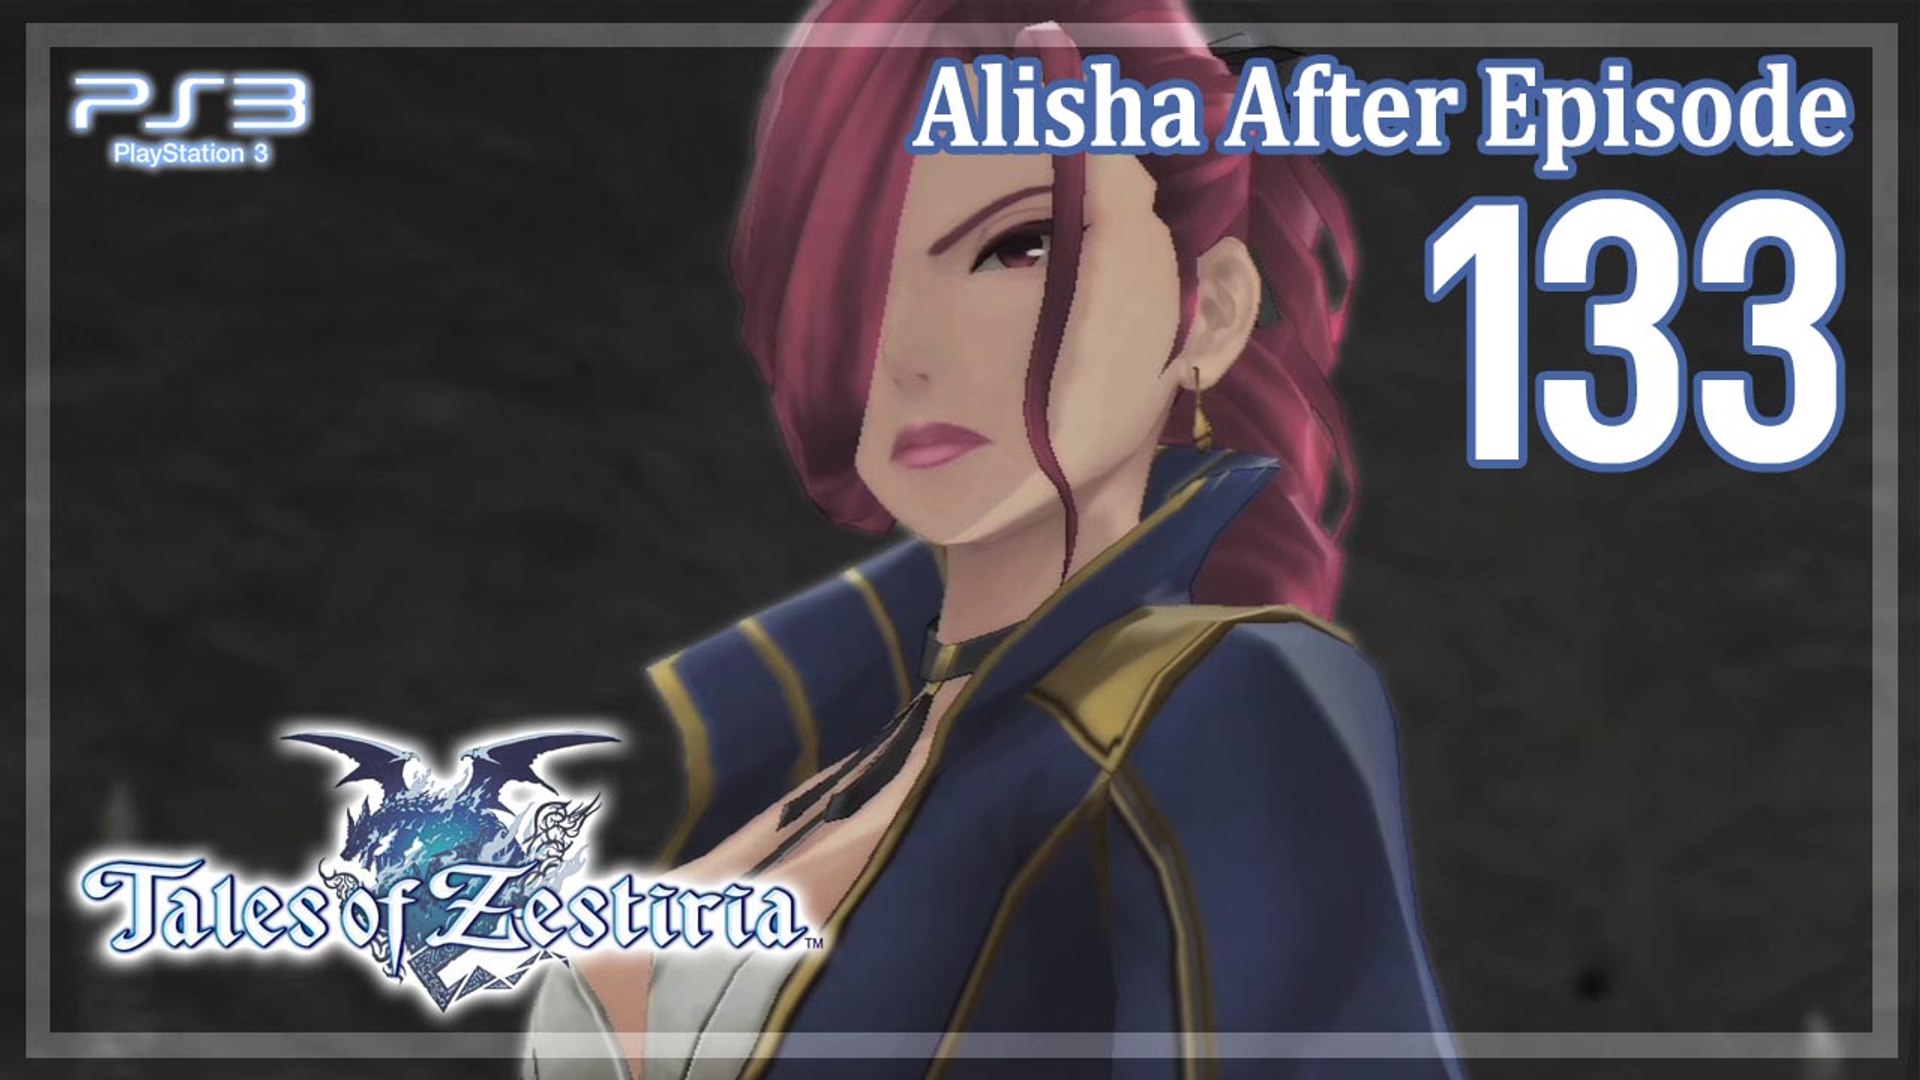 テイルズ オブ ゼスティリア Tales Of Zestiria Ps3 133 Alisha After Episode アリーシャ アフターエピソード 瞳にうつるもの Video Dailymotion